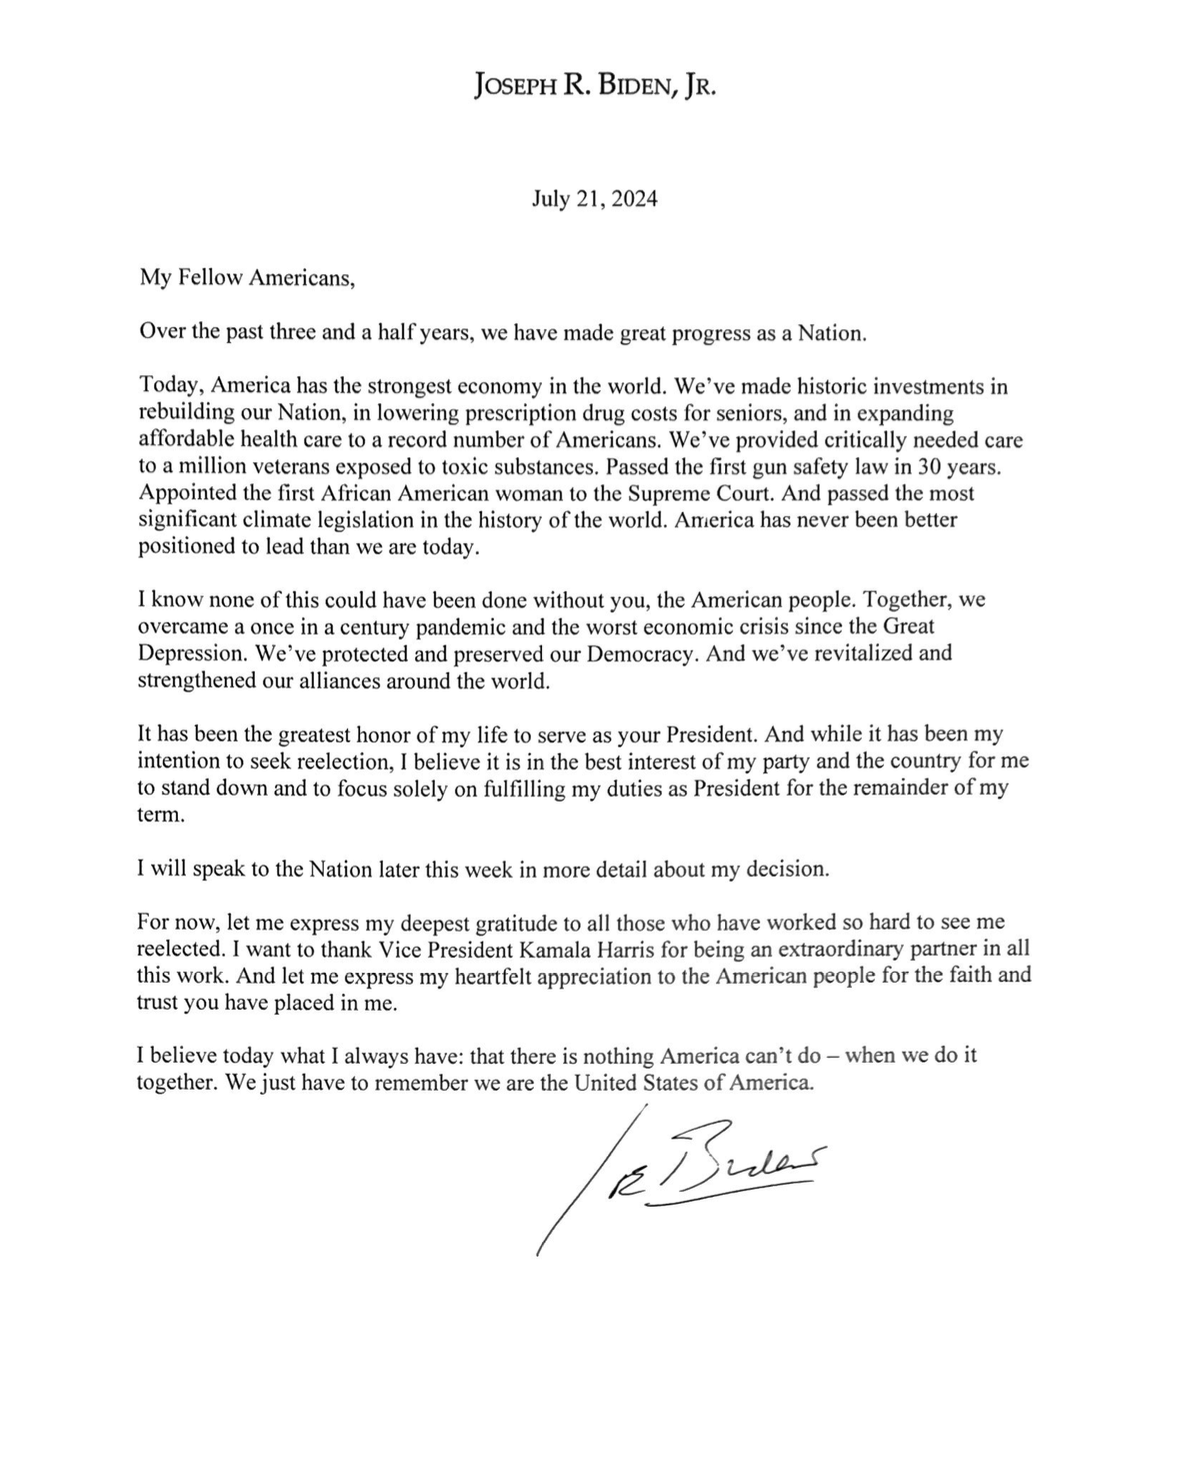 A letter from President Biden